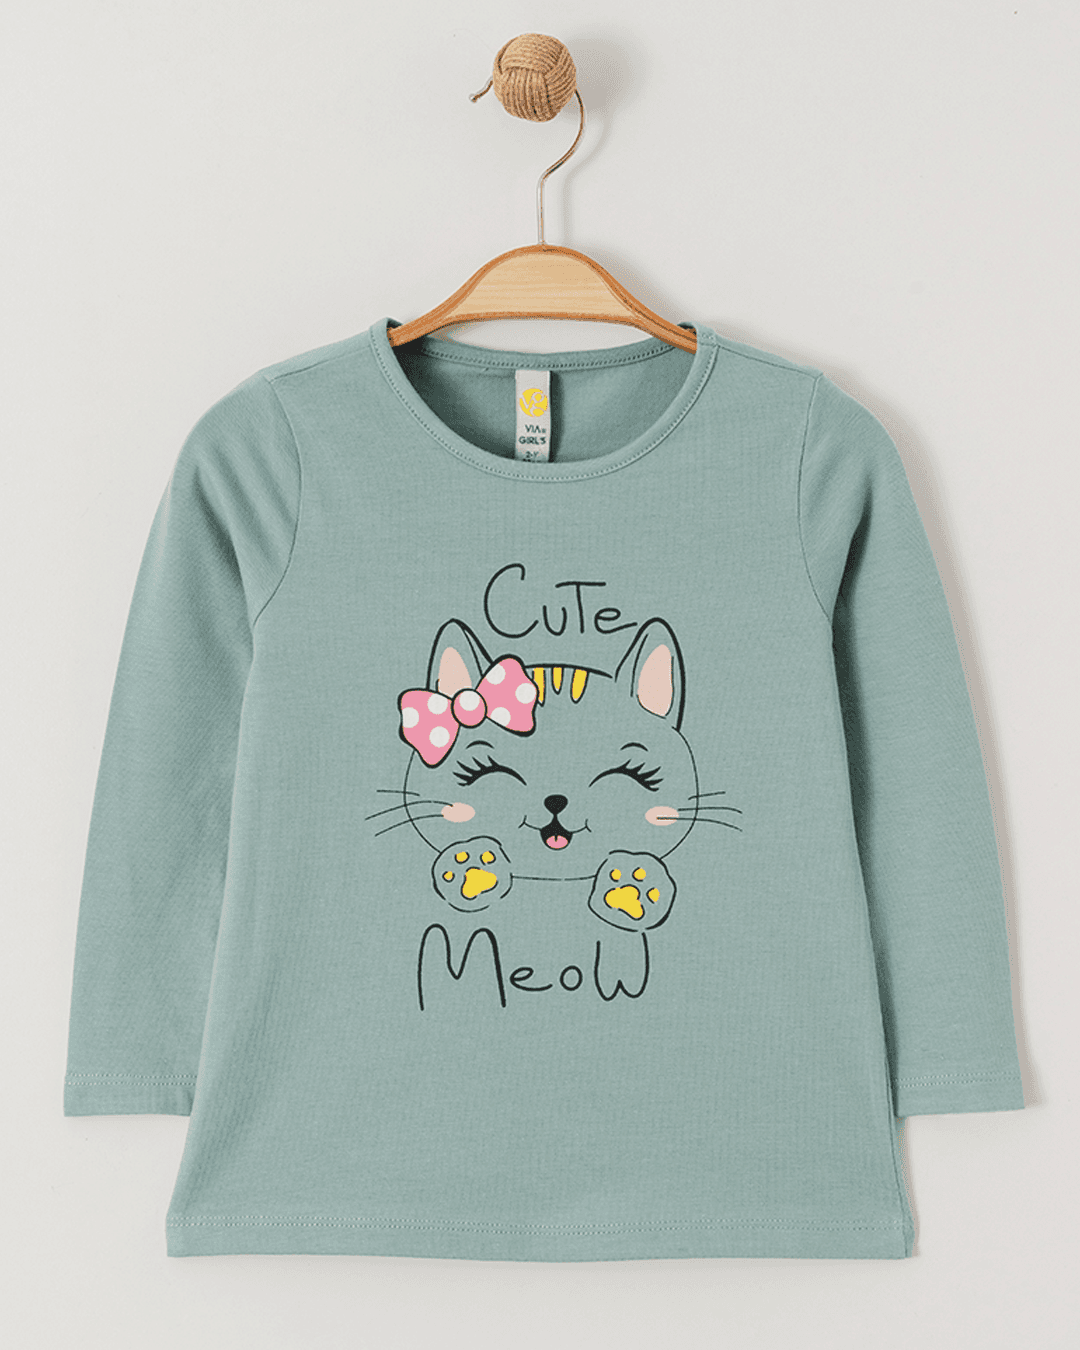 Selected image for VIA GIRLS Majica za devojčice Cute Meow, Zelena